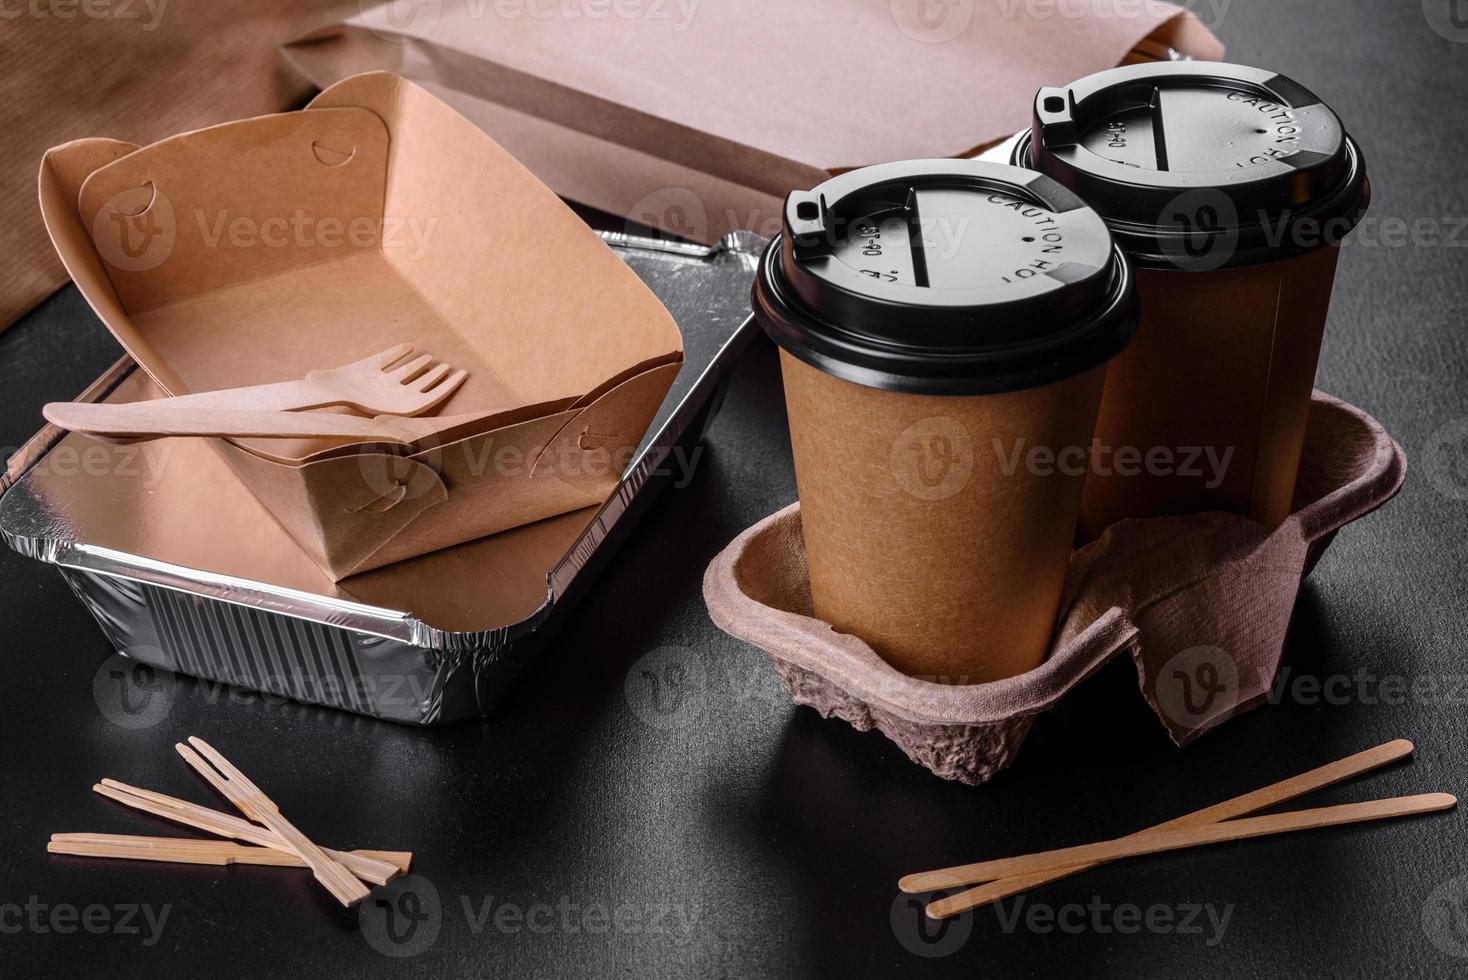 pratos descartáveis feitos de papelão marrom ecológico em um fundo escuro foto